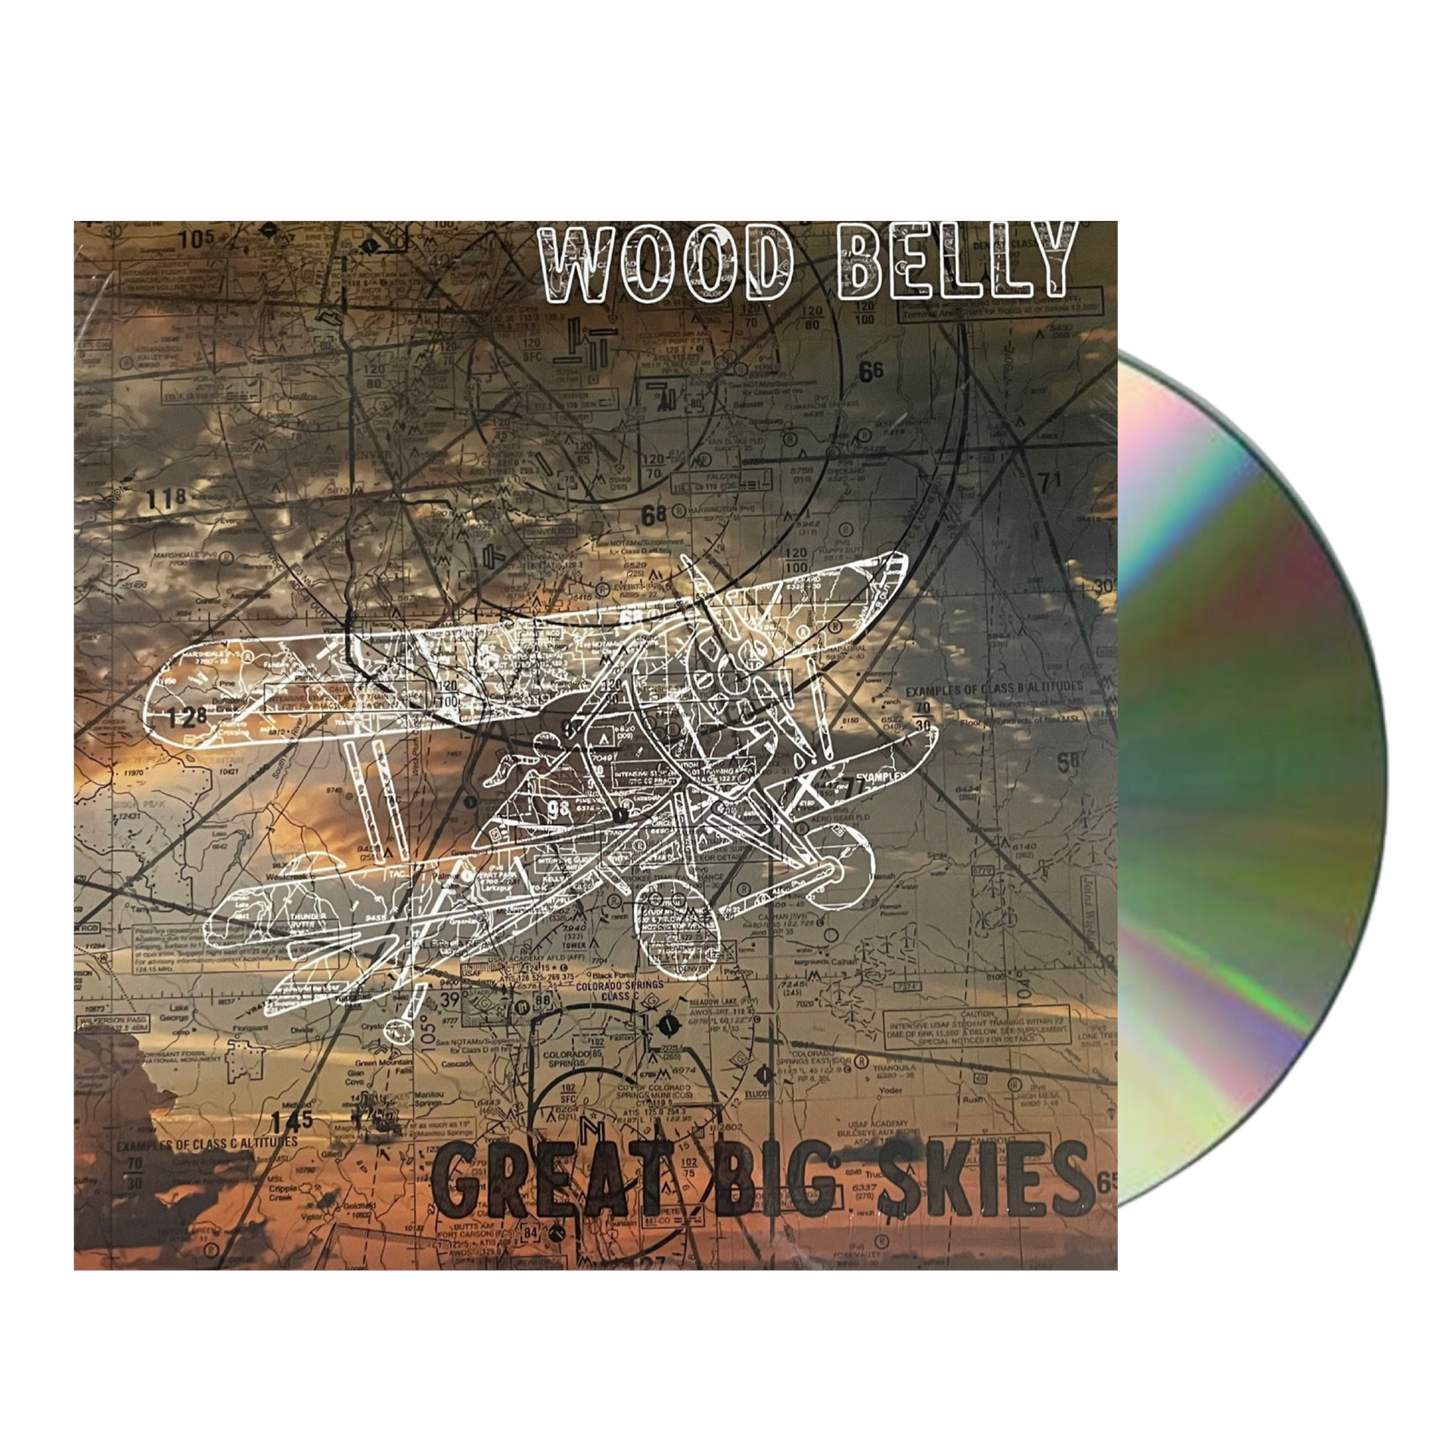 Wood Belly - Great Big Skies CD